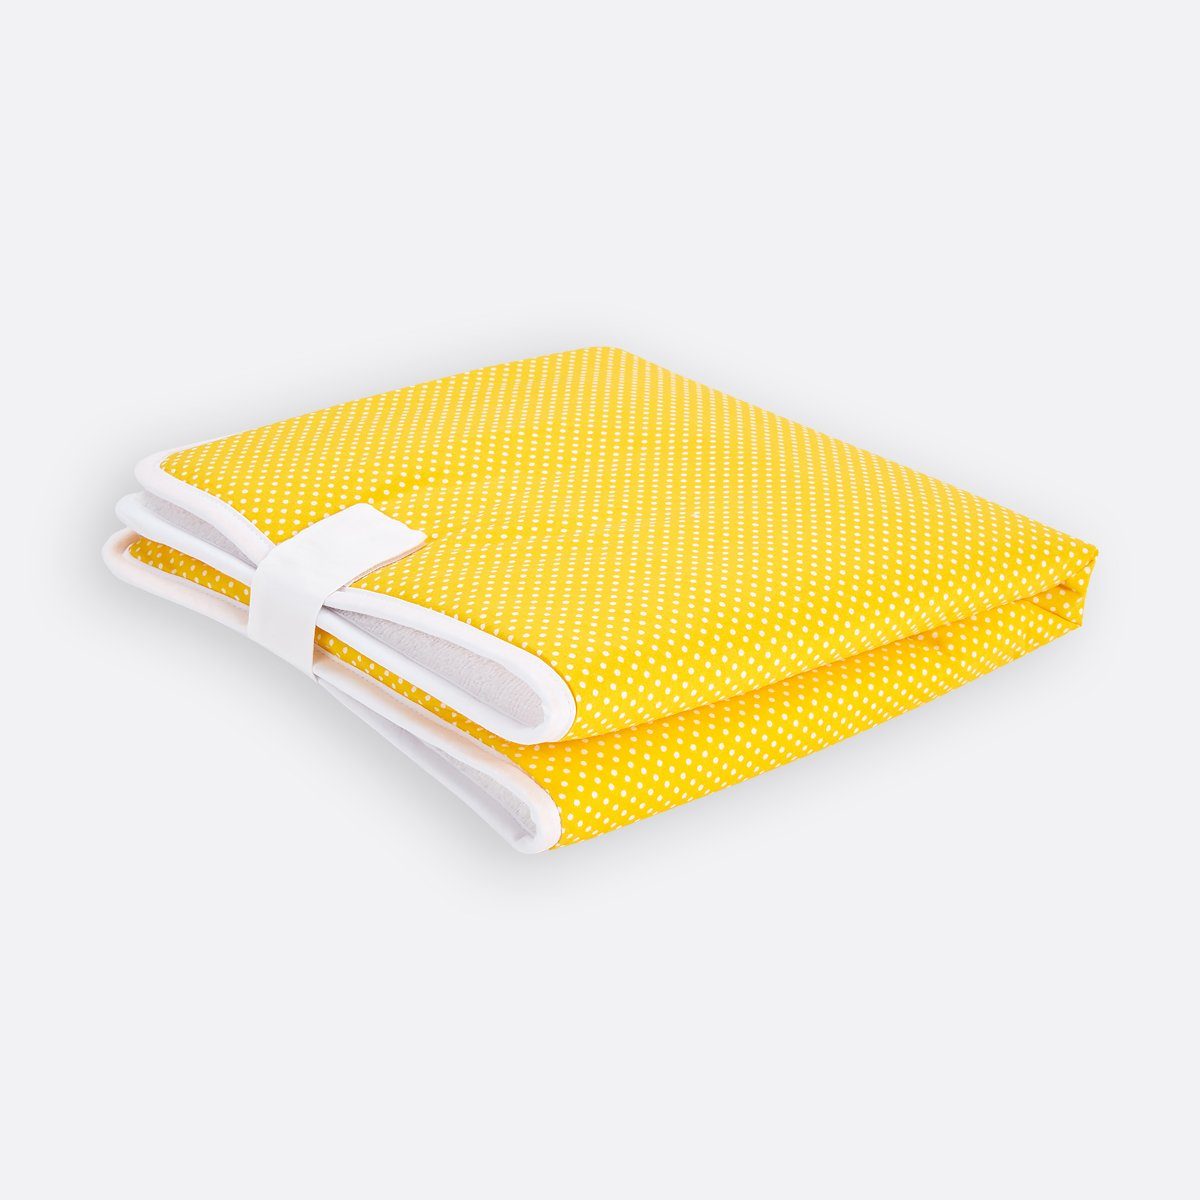 KraftKids Wickelauflage weiße Punkte auf Gelb, Reisewickelunterlage aus 3 Stoffsichten, 100% Baumwolle, Innen wasserundurchlässig, faltbar mit Klettverschluss